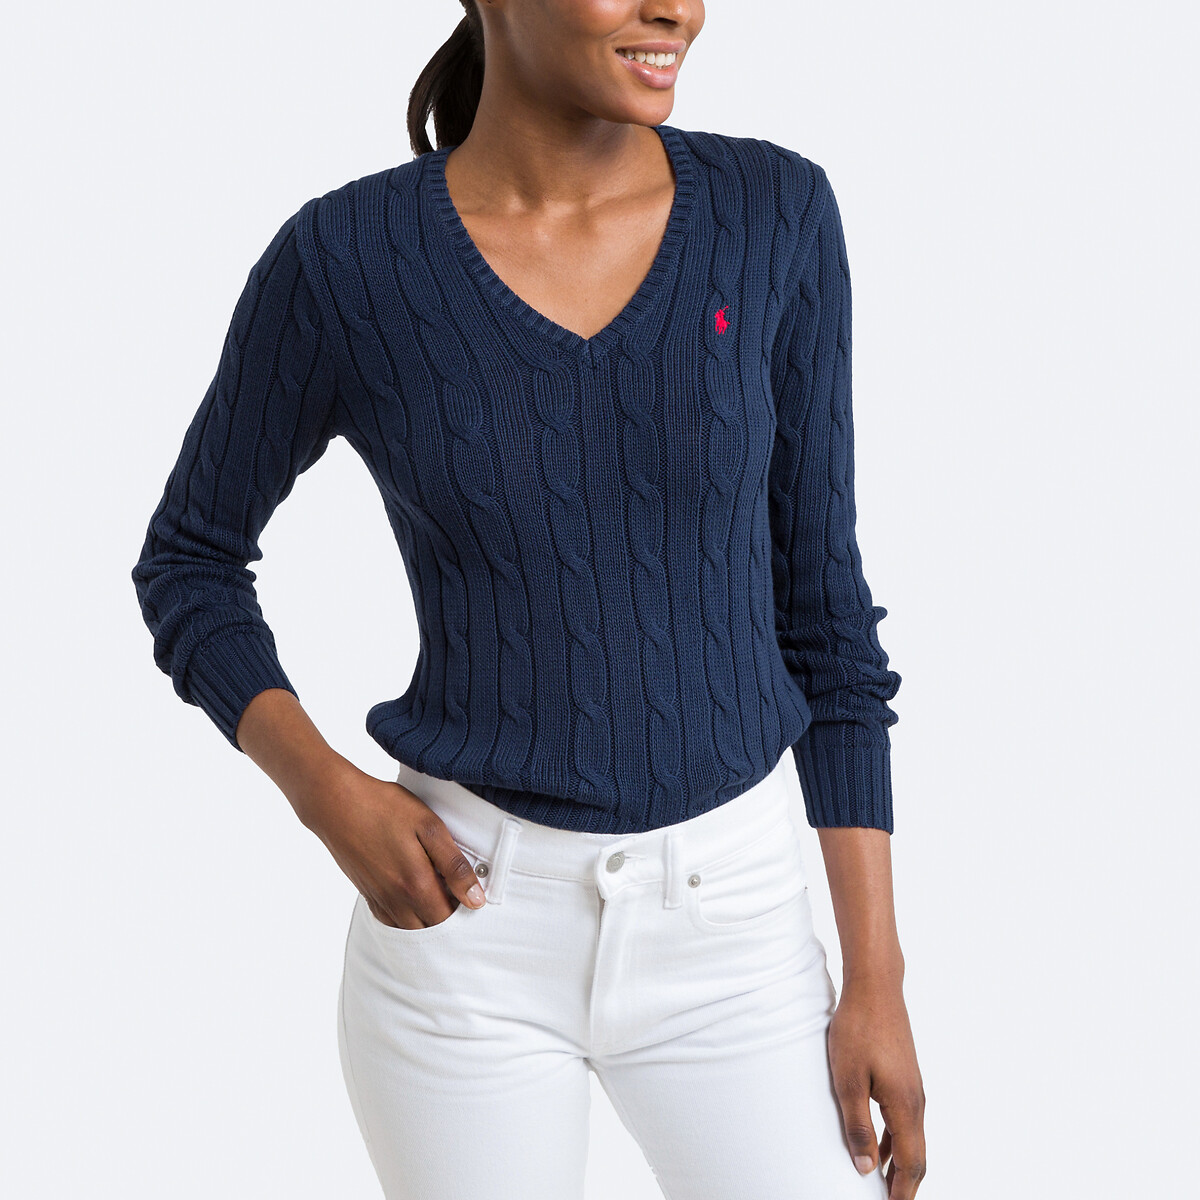 Пуловер с V-образным вырезом и витым узором XL синий пуловер с высоким воротником из трикотажа с витым узором l бежевый